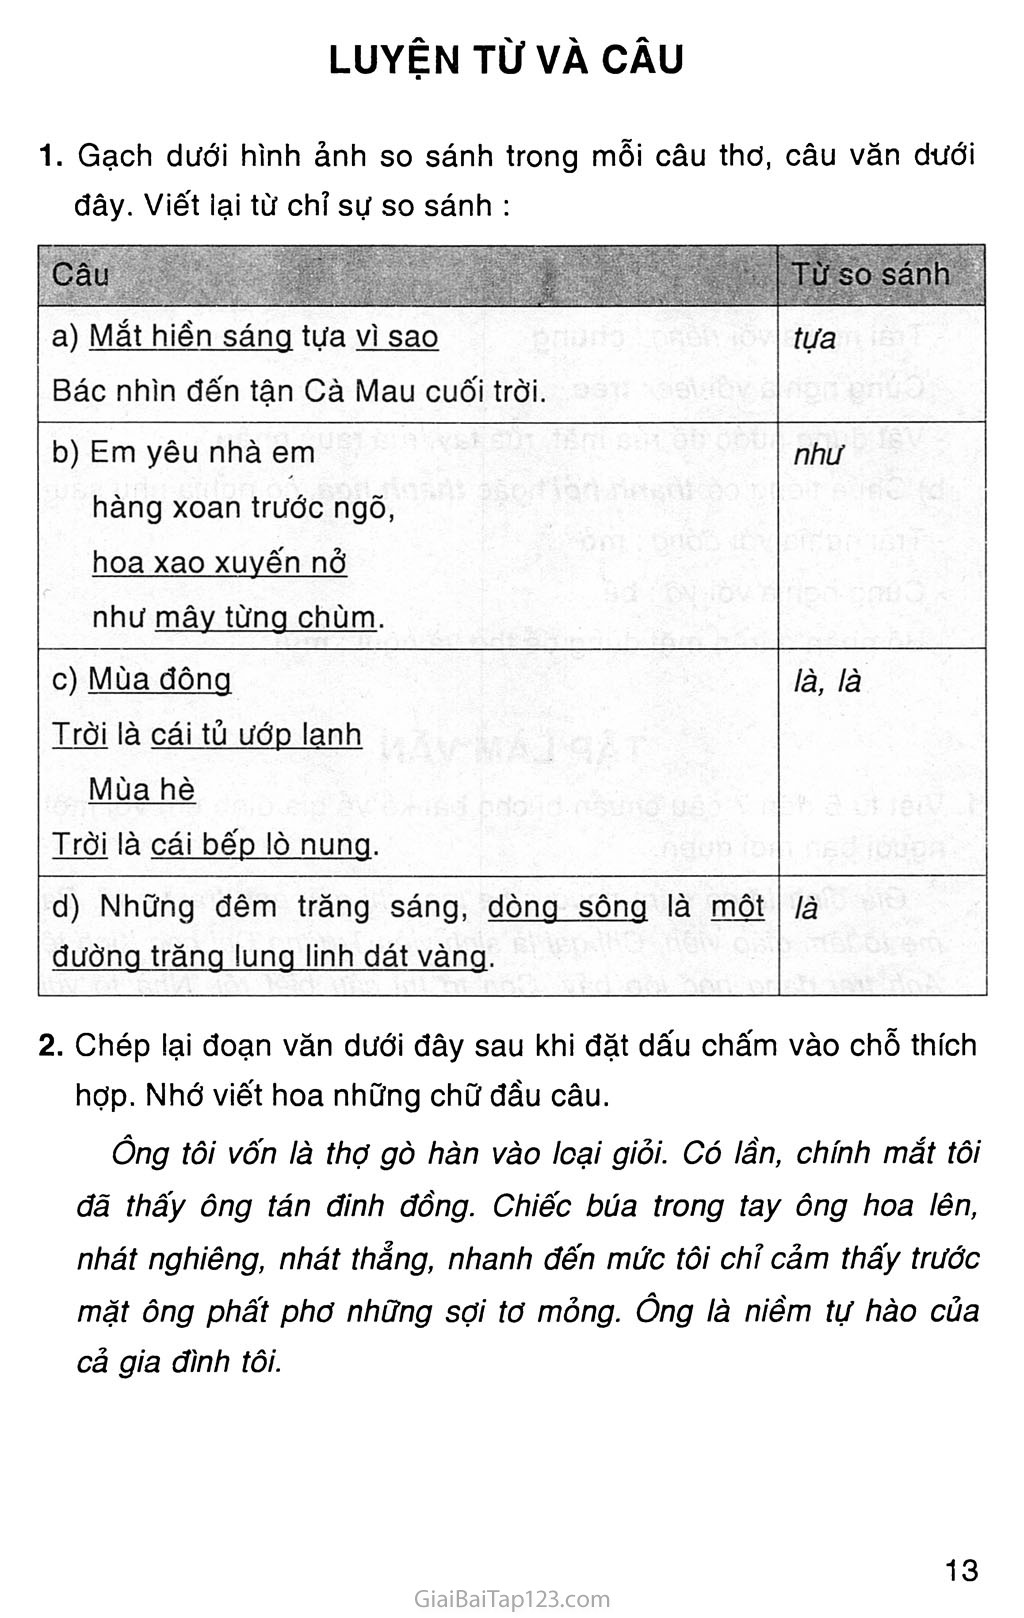 Giải vở bài tập Tiếng Việt lớp 3 tập 1 Tuần 3